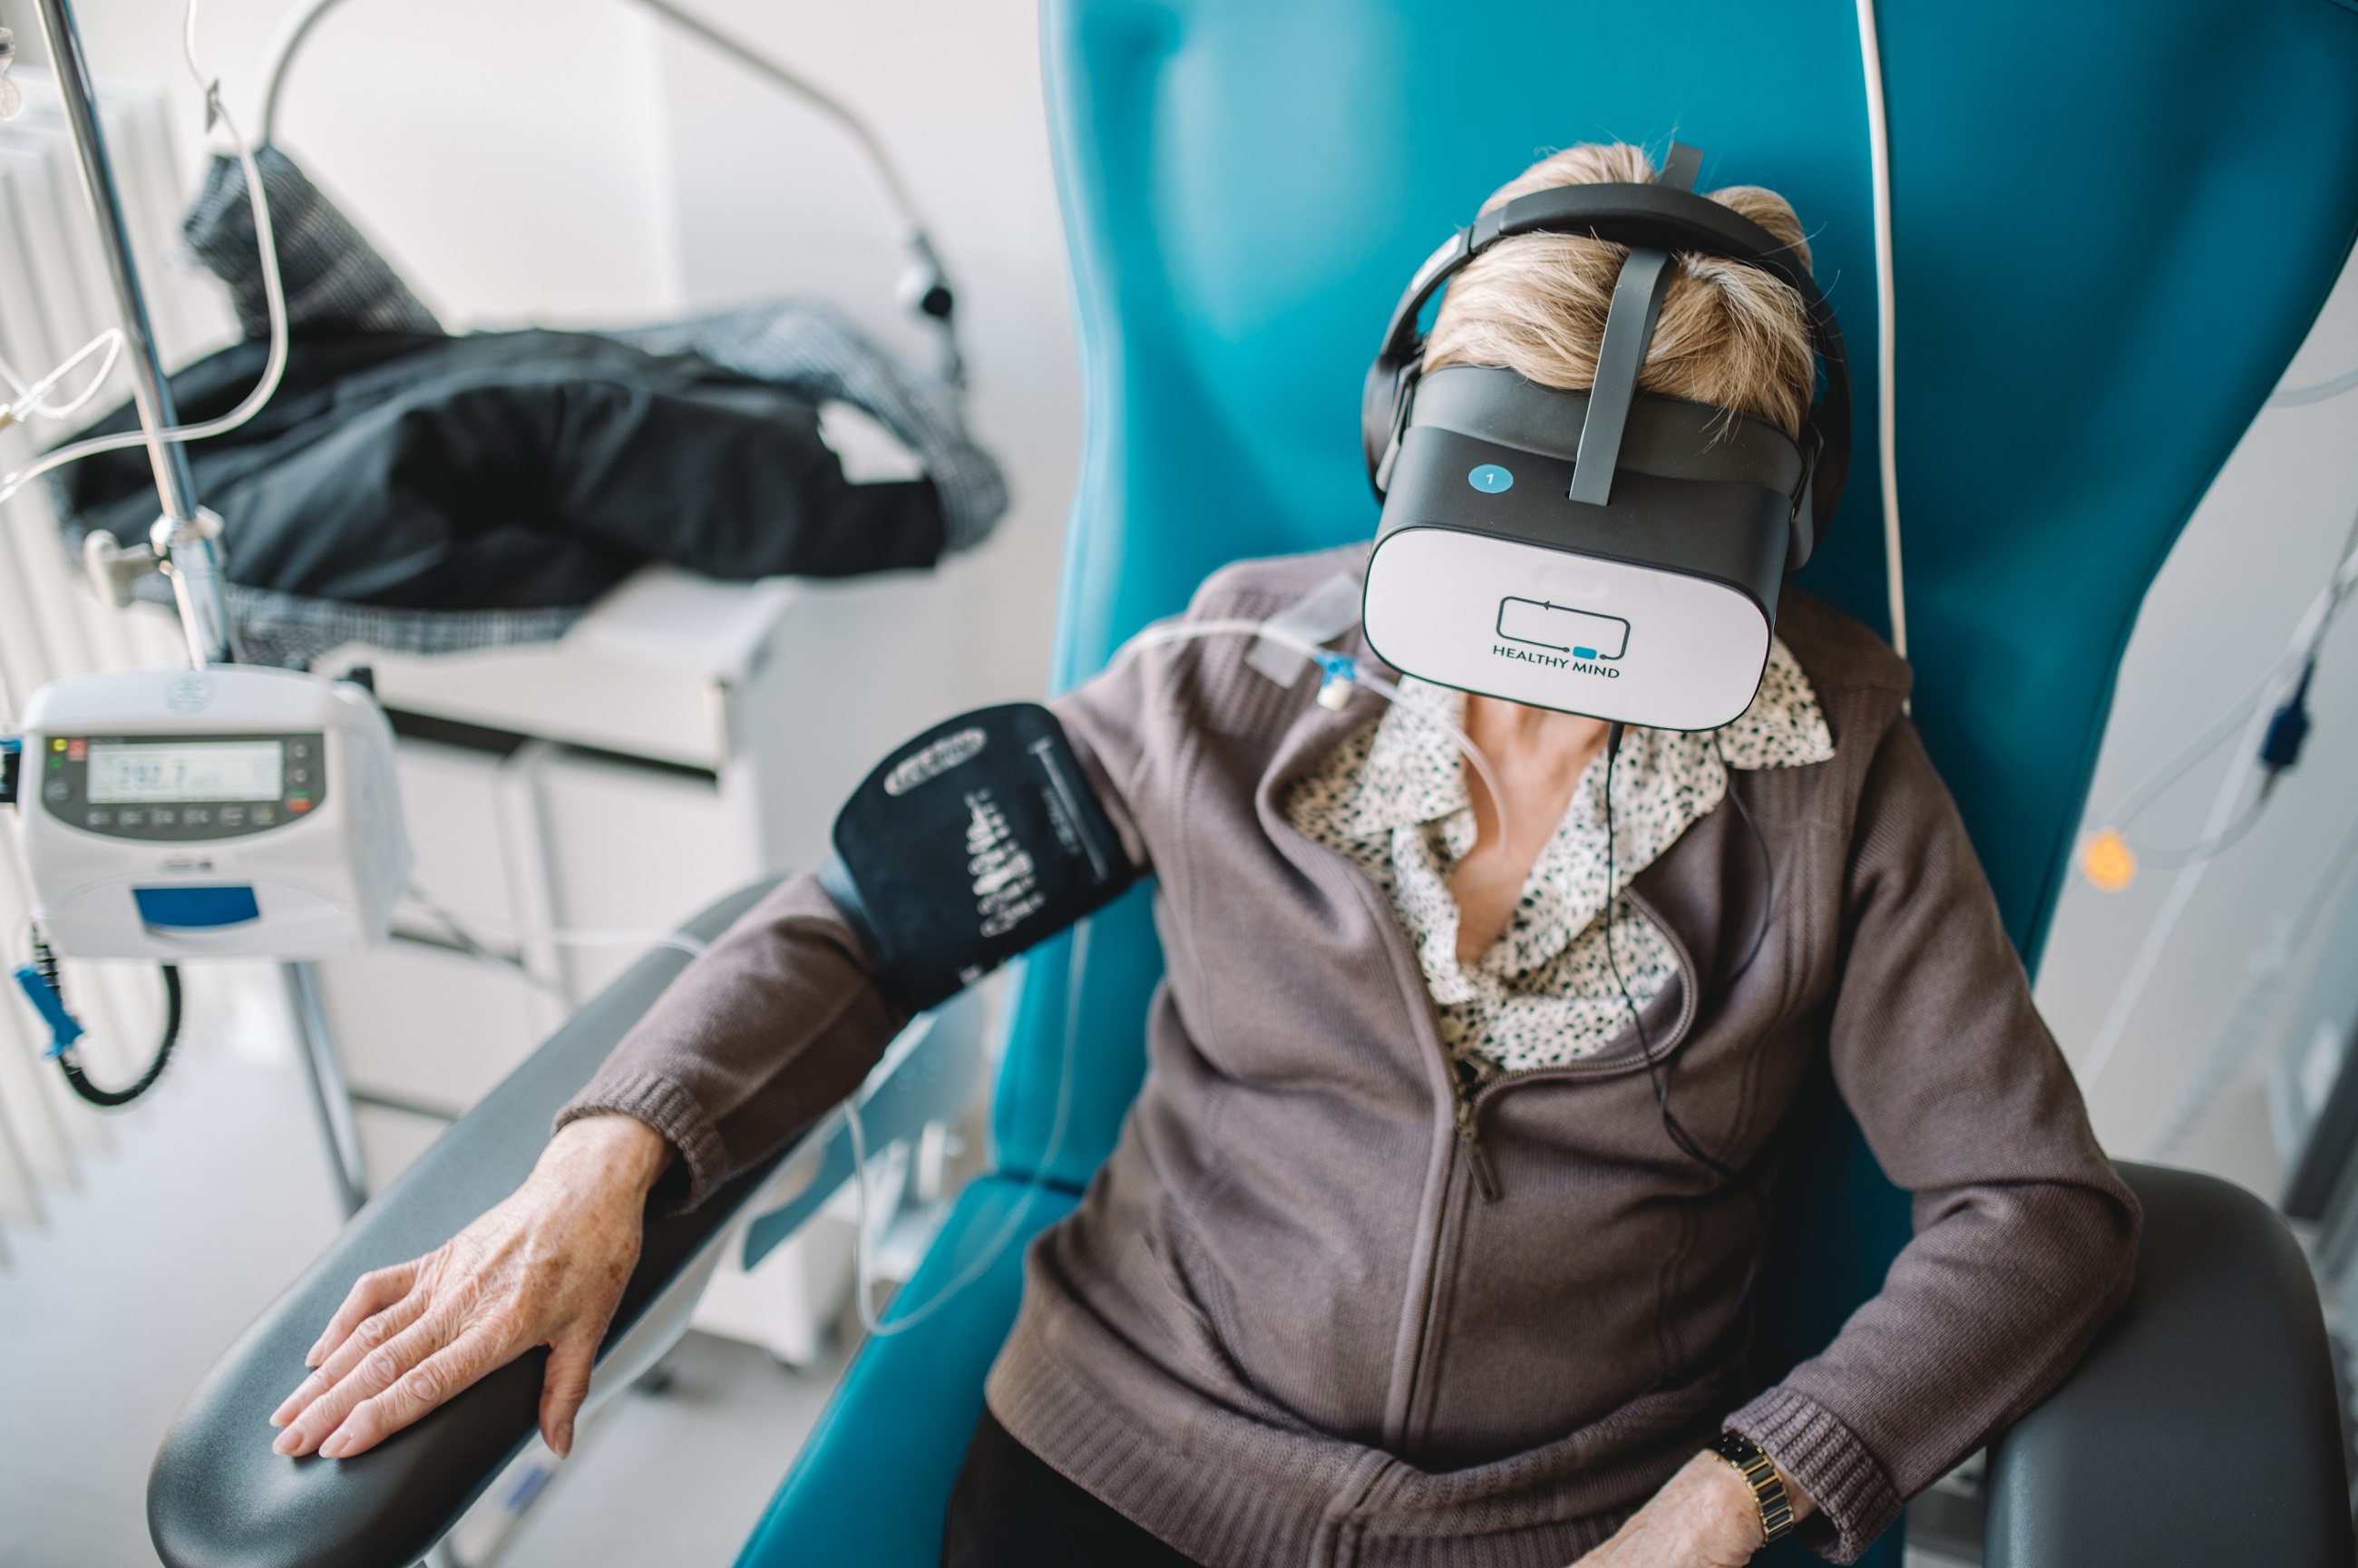 La réalité virtuelle permet de diminuer les nausées et l’anxiété